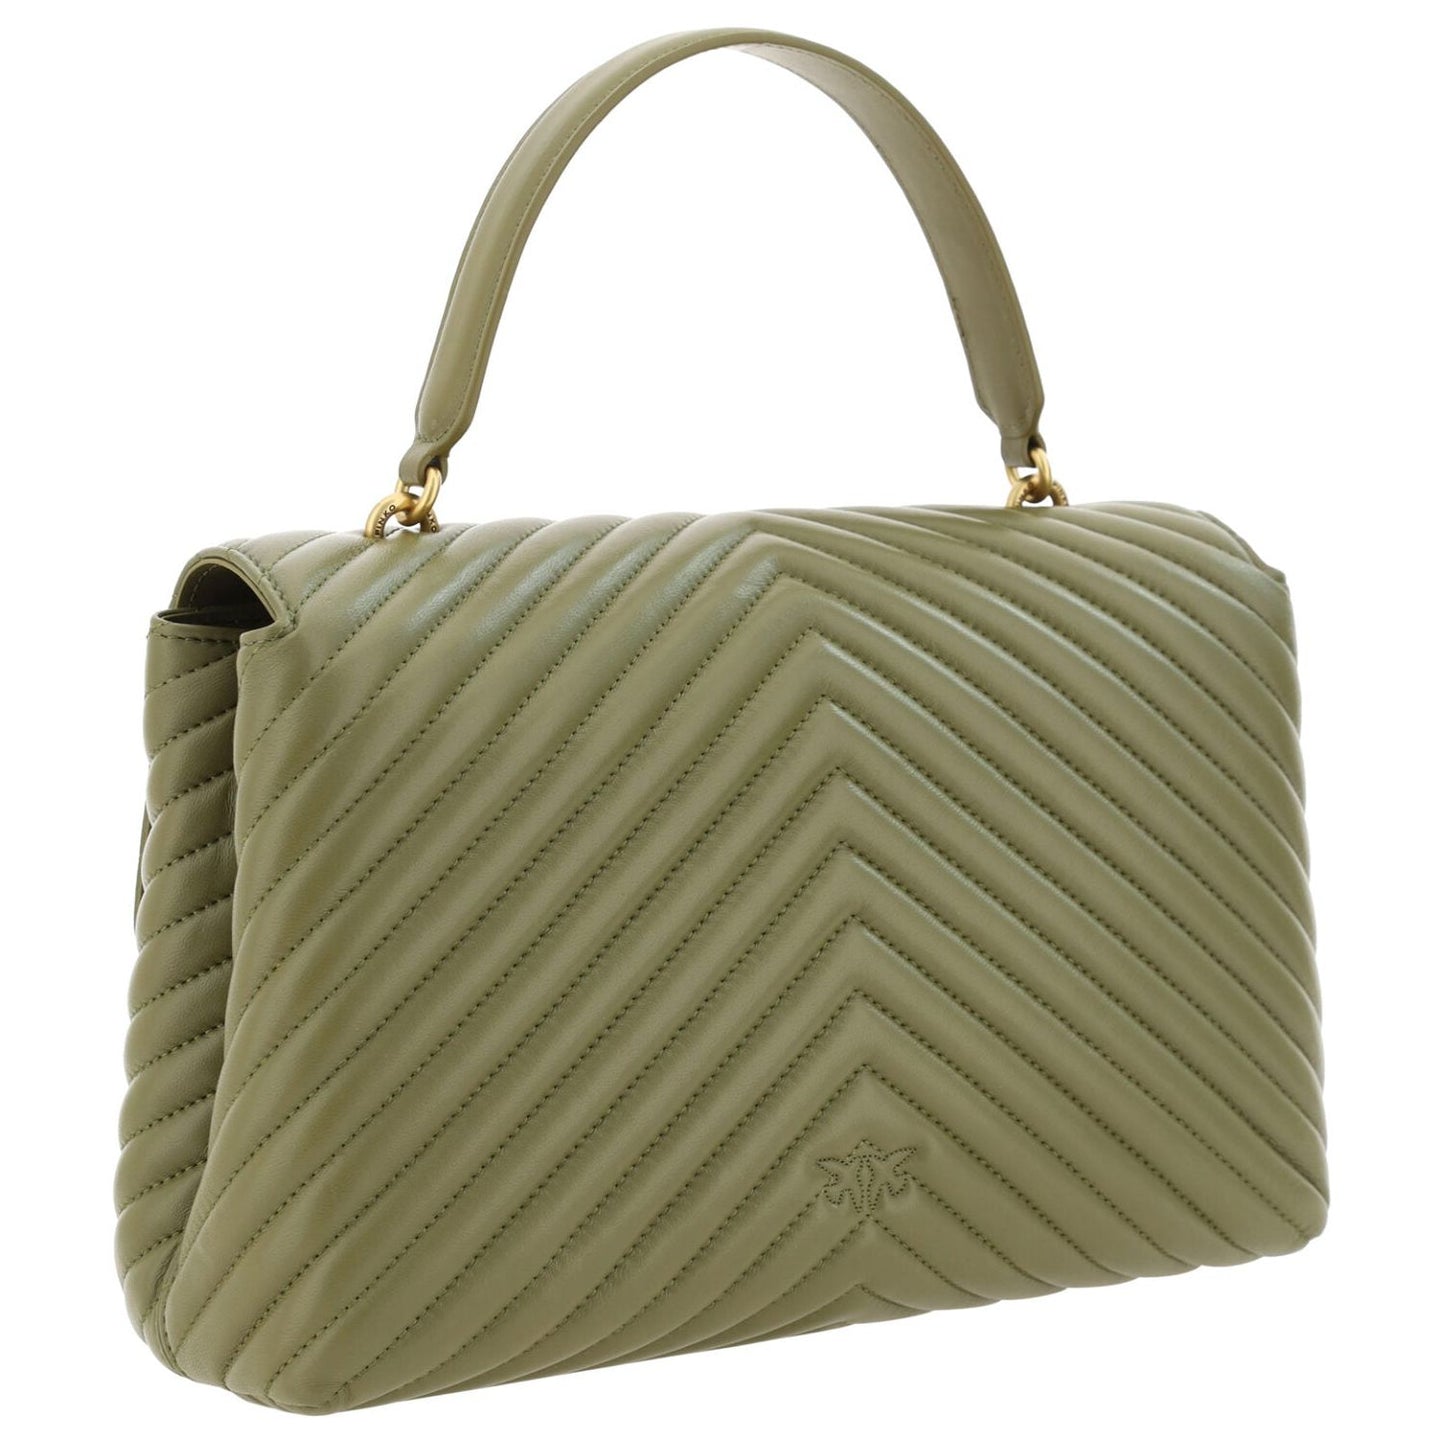 PINKO Emerald Elegance Calf Leather Handbag green-calf-leather-love-lady-handbag CDDE9437-BC91-4055-90F1-A9FDFF32D4F0-scaled-ddde7fff-049.jpg